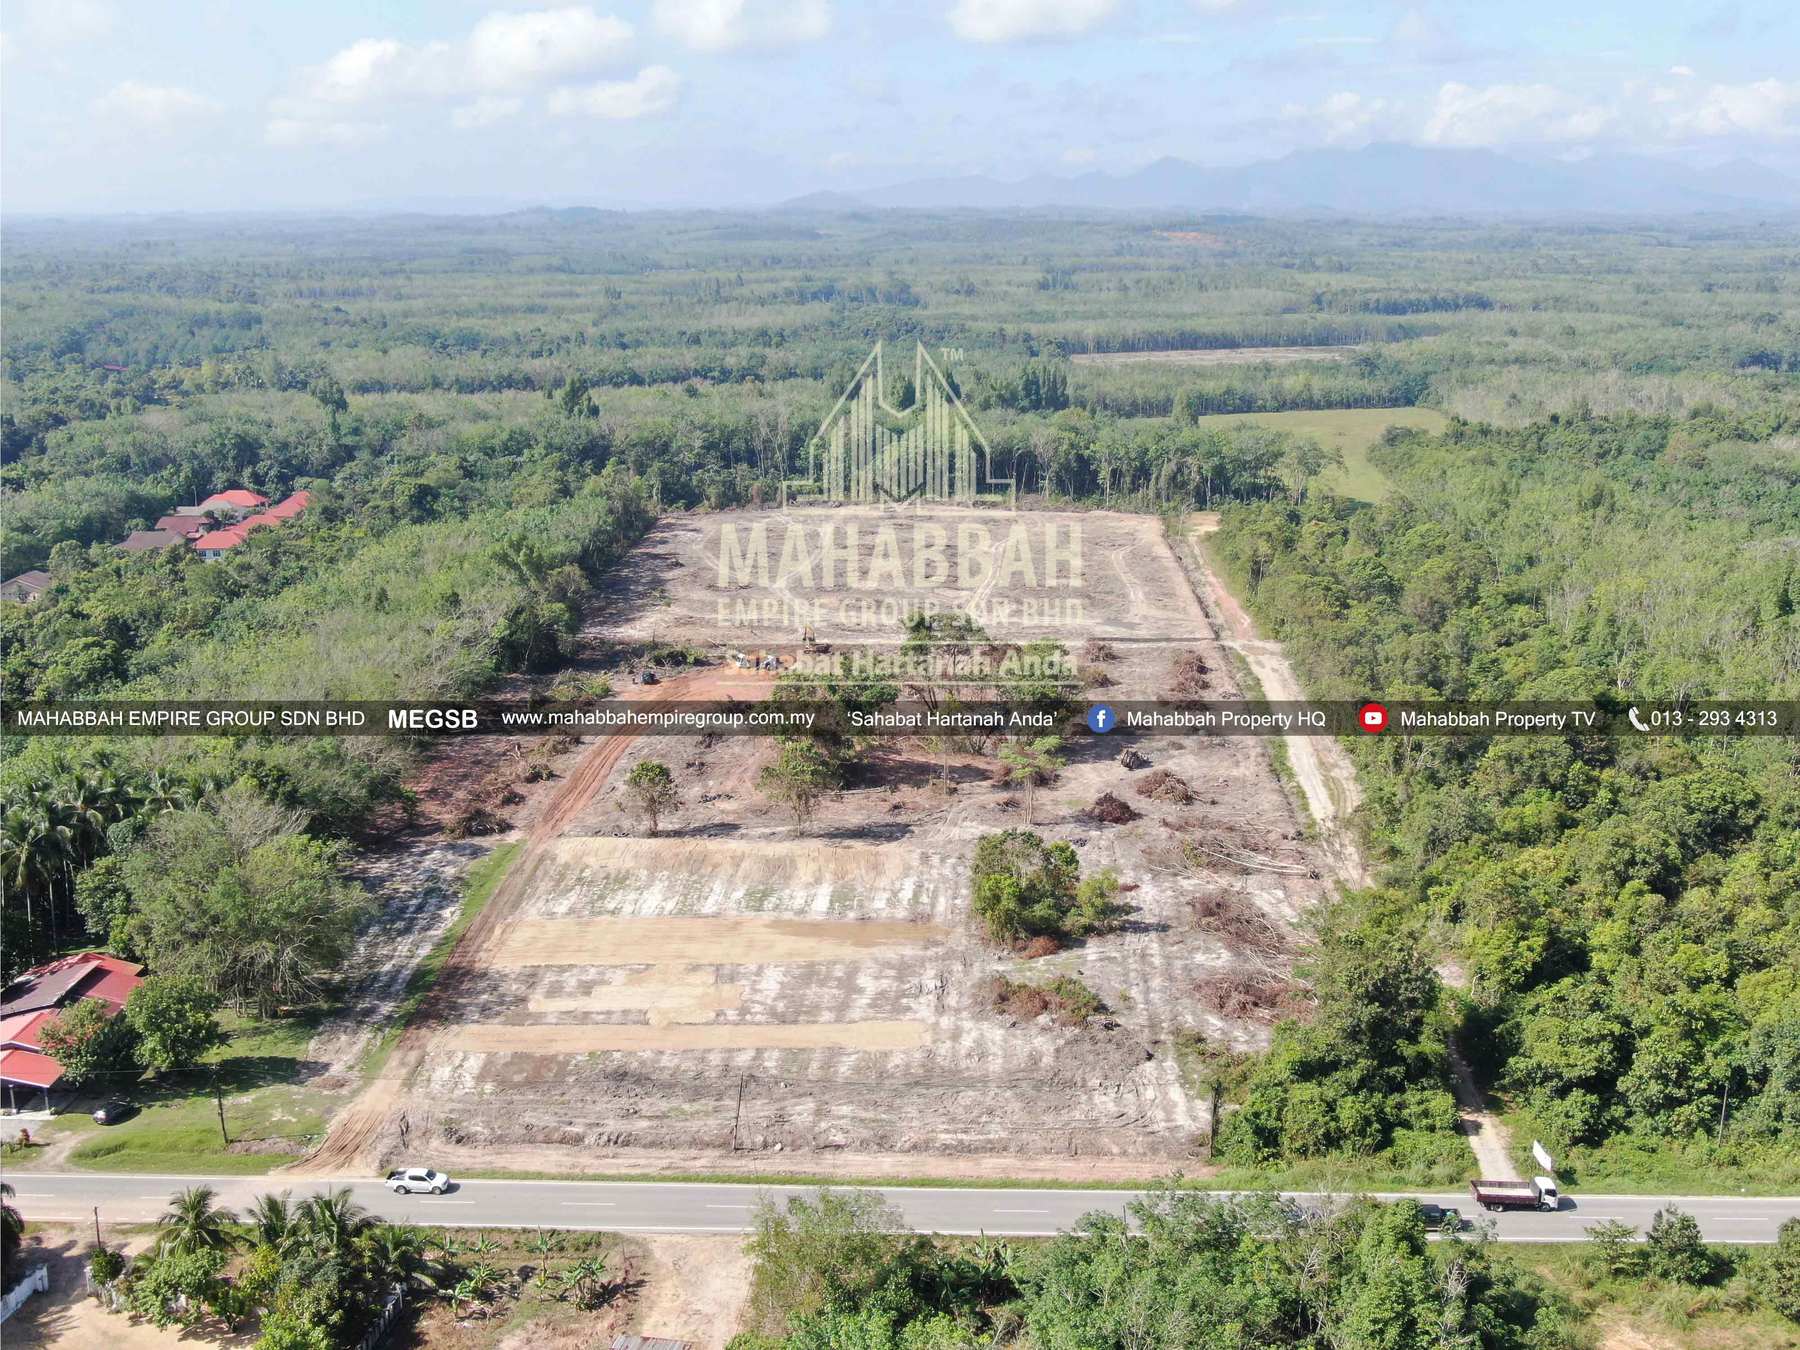 05 Tanah Lot Banglo Mampu Milik MEGSB Alor Pasir Tanah Merah (TM10)